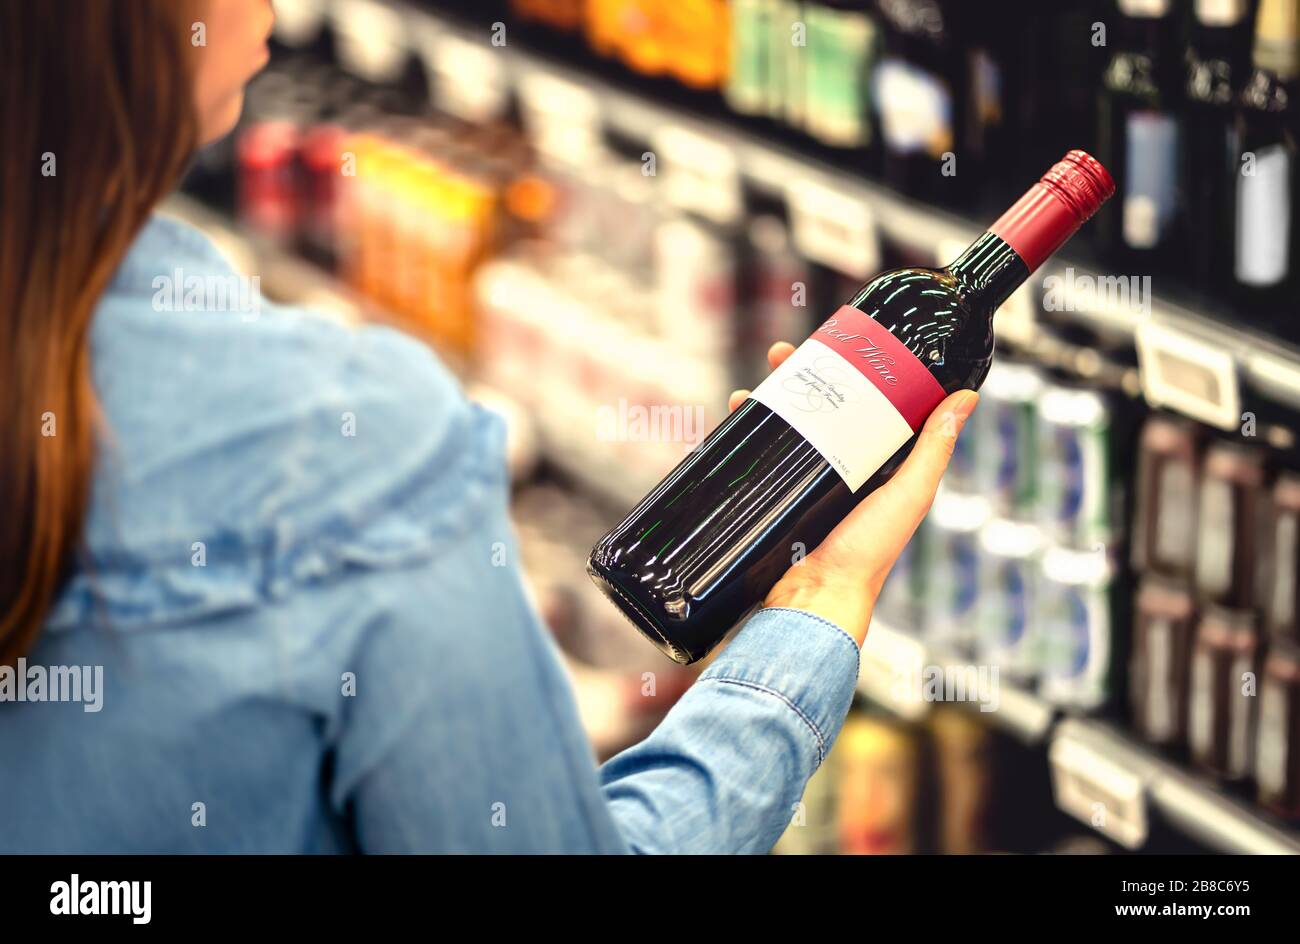 Donna che legge l'etichetta della bottiglia di vino rosso in negozio di liquori o nella sezione di alcool del supermercato. Ripiano pieno di bevande alcoliche. Foto Stock